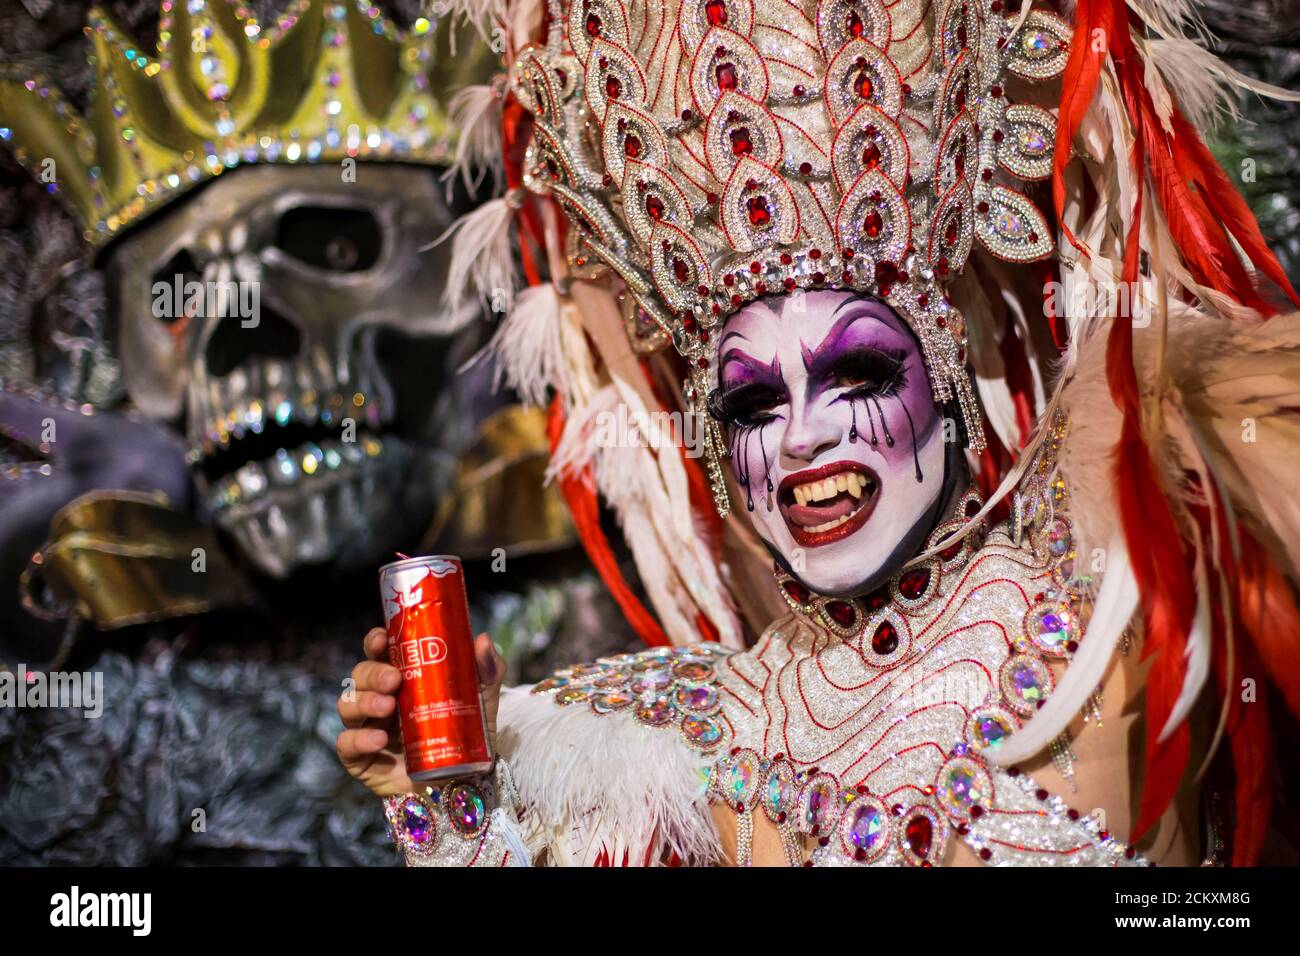 El participante se prepara para participar en un concurso de drag queen  durante las fiestas de Carnaval en las Palmas, Islas Canarias, Gran  Canaria, España 4 de marzo de 2019. REUTERS/Borja Suárez